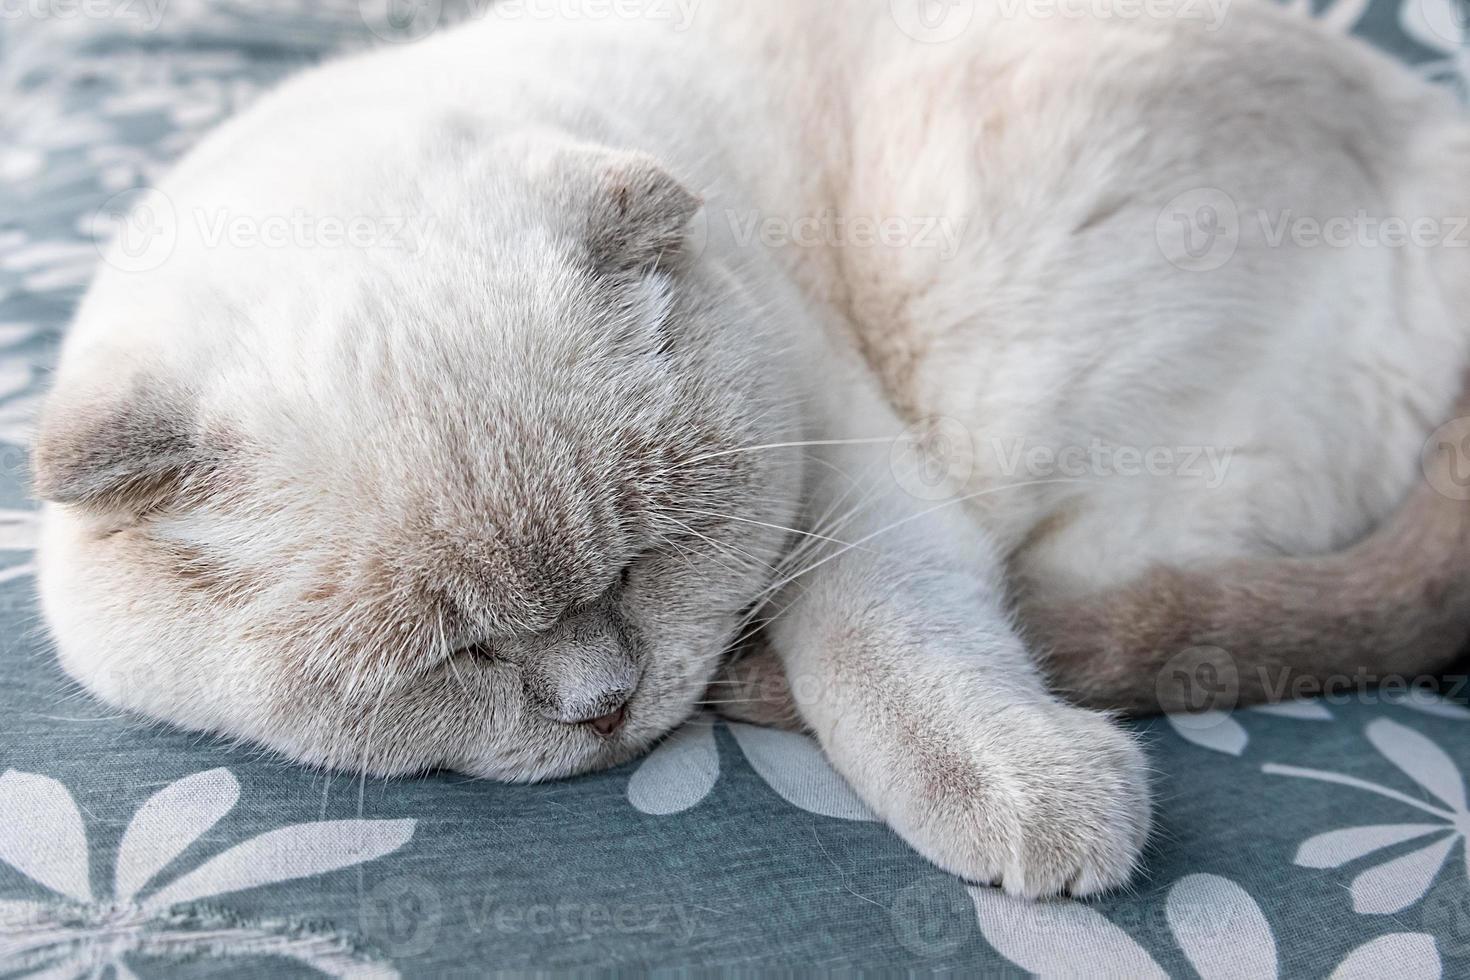 gracioso gato británico blanco doméstico de pelo corto durmiendo en casa. gatito descansando y relájate en el sofá azul. cuidado de mascotas y concepto de animales. foto